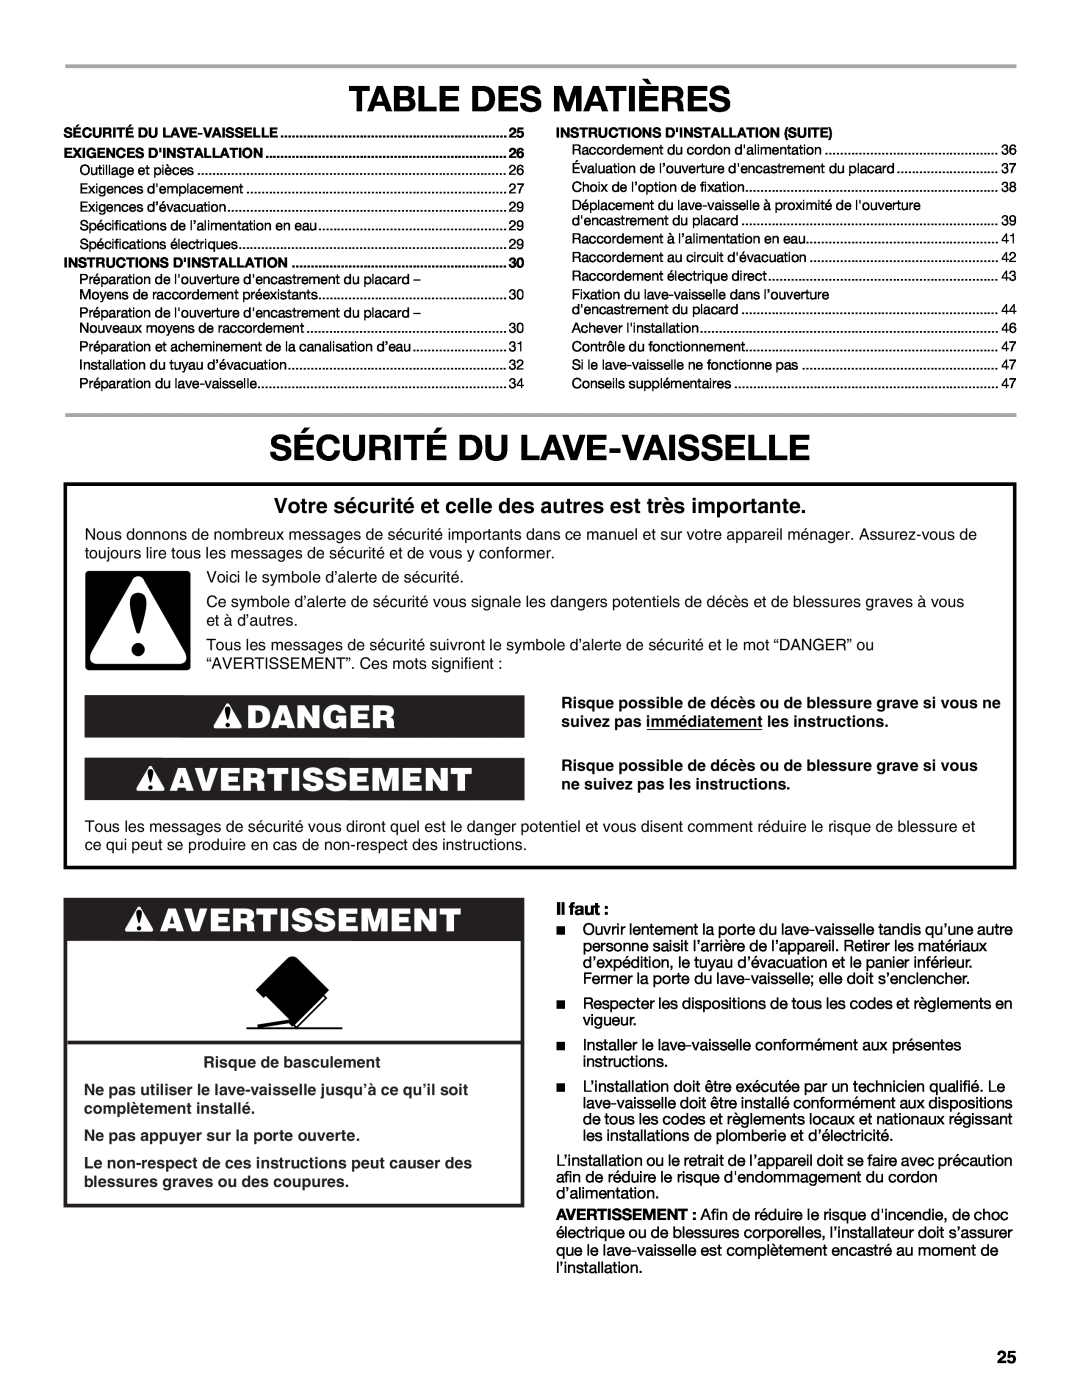 Maytag W10532762A installation instructions Table Des Matières, Sécurité Du Lave-Vaisselle, Danger Avertissement, Il faut 